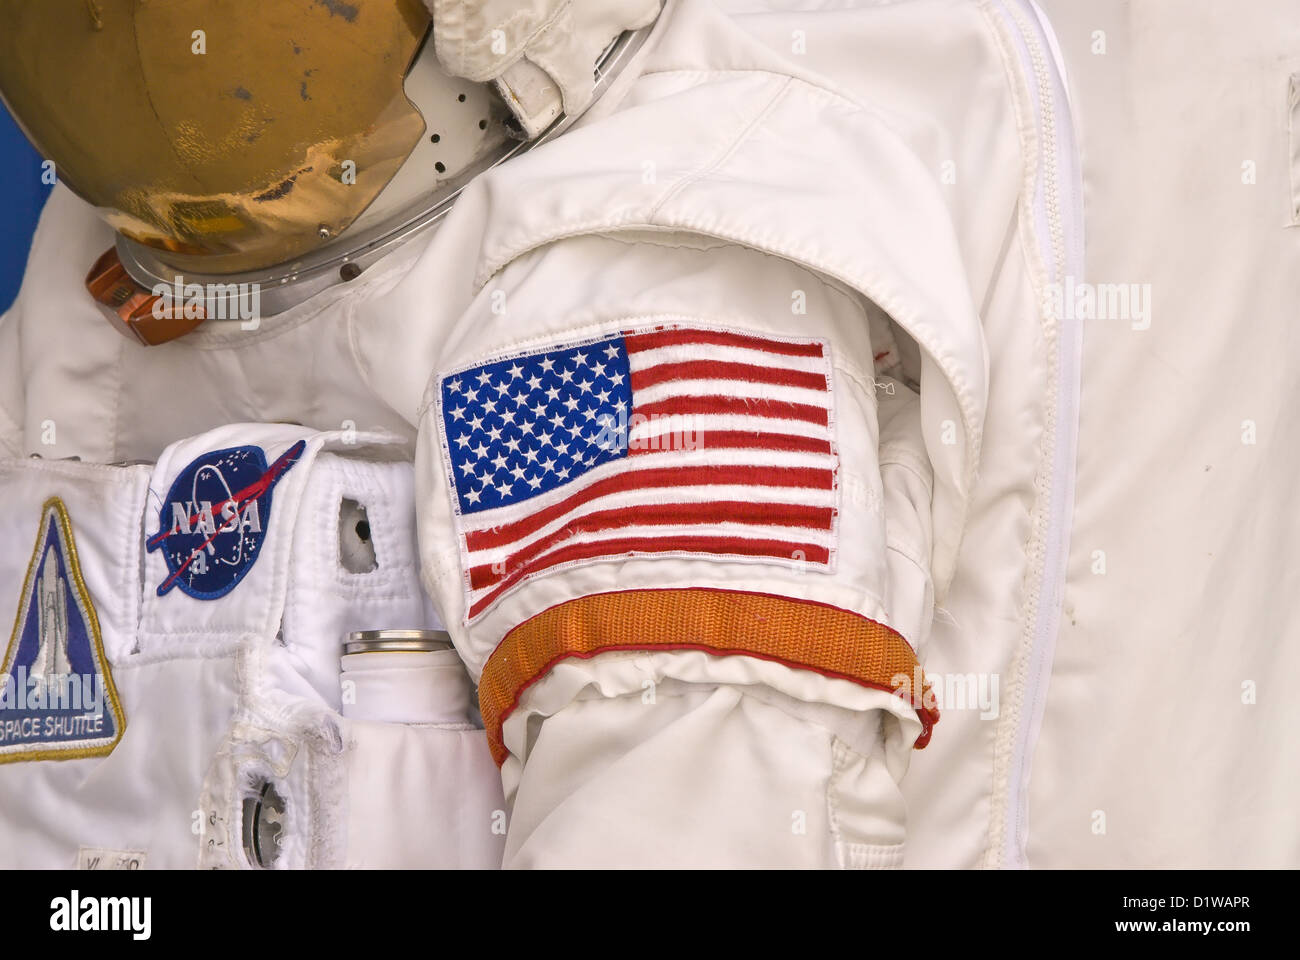 L'astronaute de la NASA combinaison spatiale avec le drapeau américain patch bras Kennedy Space Center Visitor Center, Florida Banque D'Images